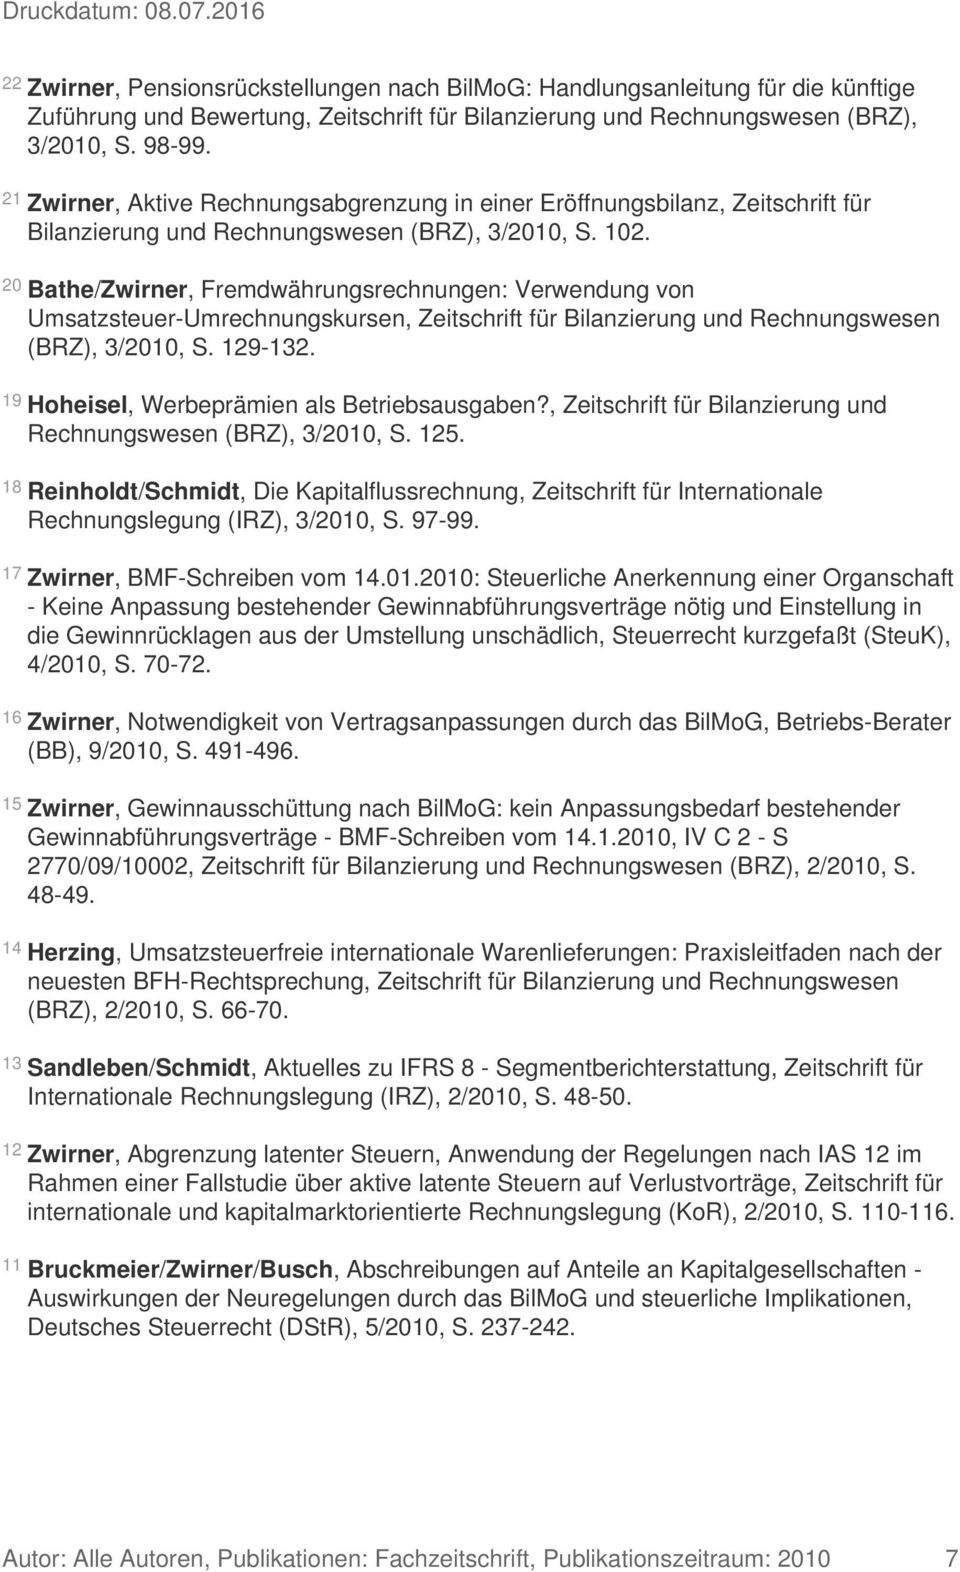 20 Bathe/Zwirner, Fremdwährungsrechnungen: Verwendung von Umsatzsteuer-Umrechnungskursen, Zeitschrift für Bilanzierung und Rechnungswesen (BRZ), 3/2010, S. 129-132.